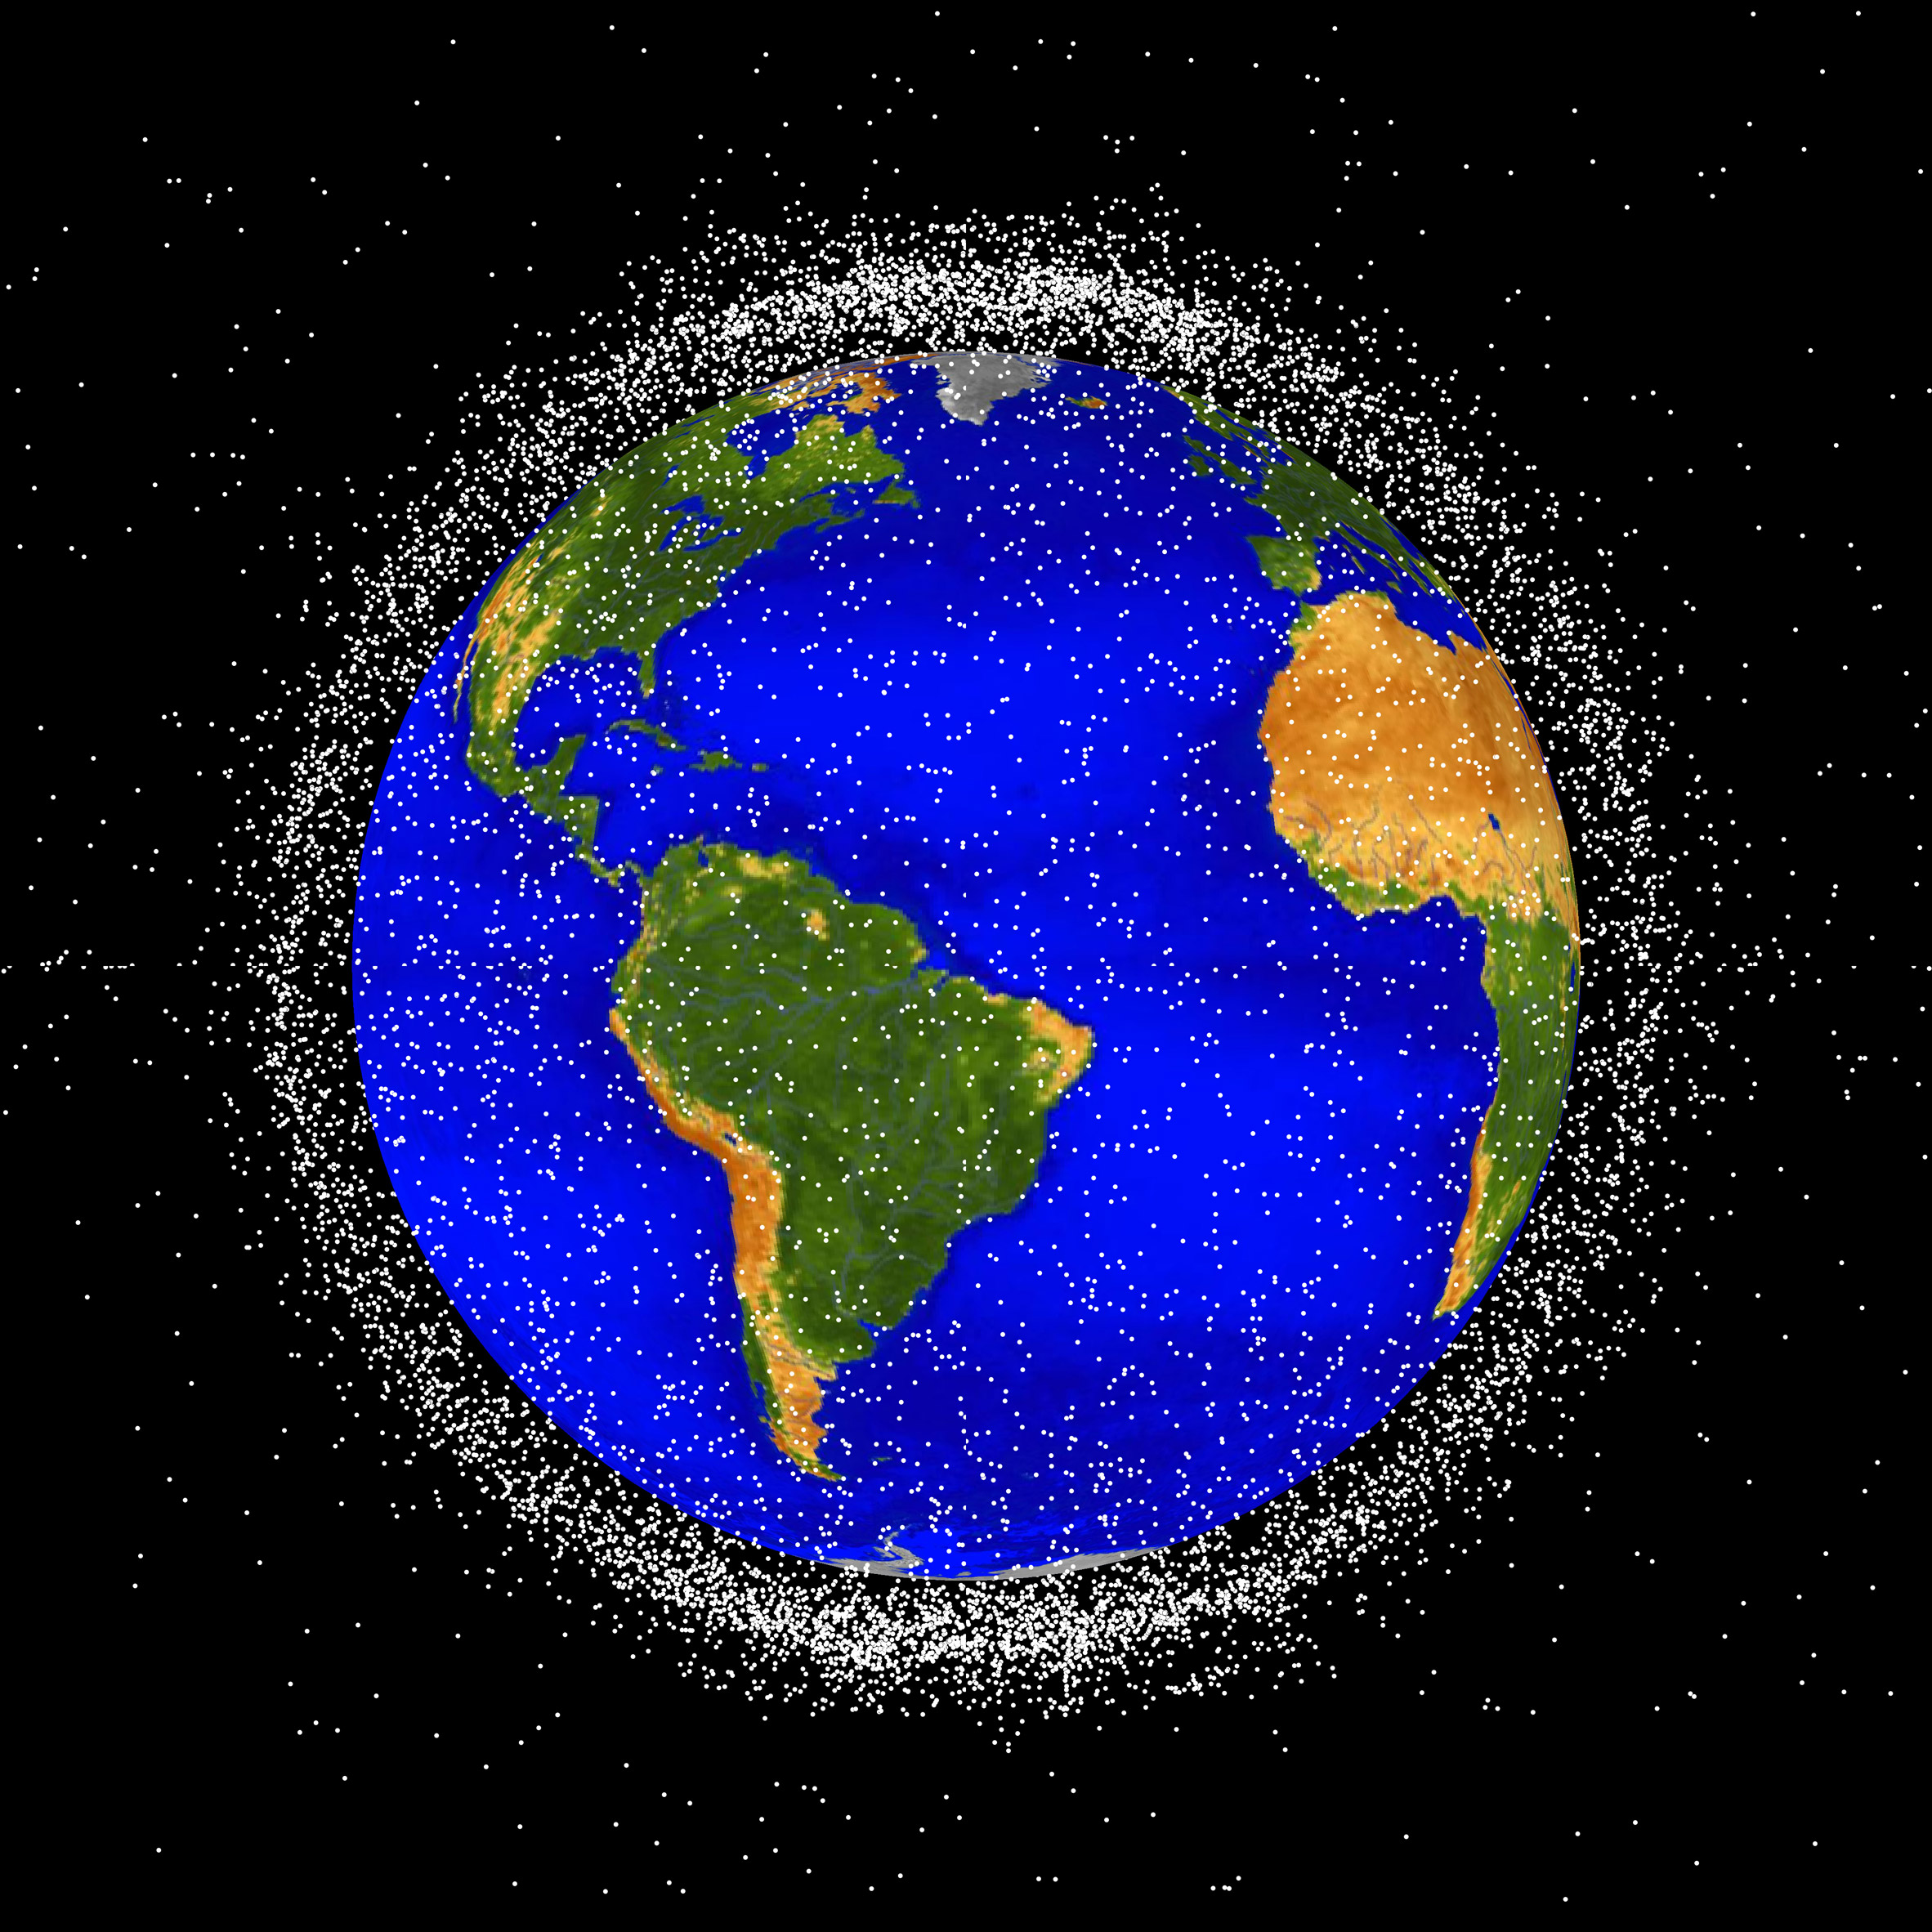 NASA rendering of space debris in low Earth orbit